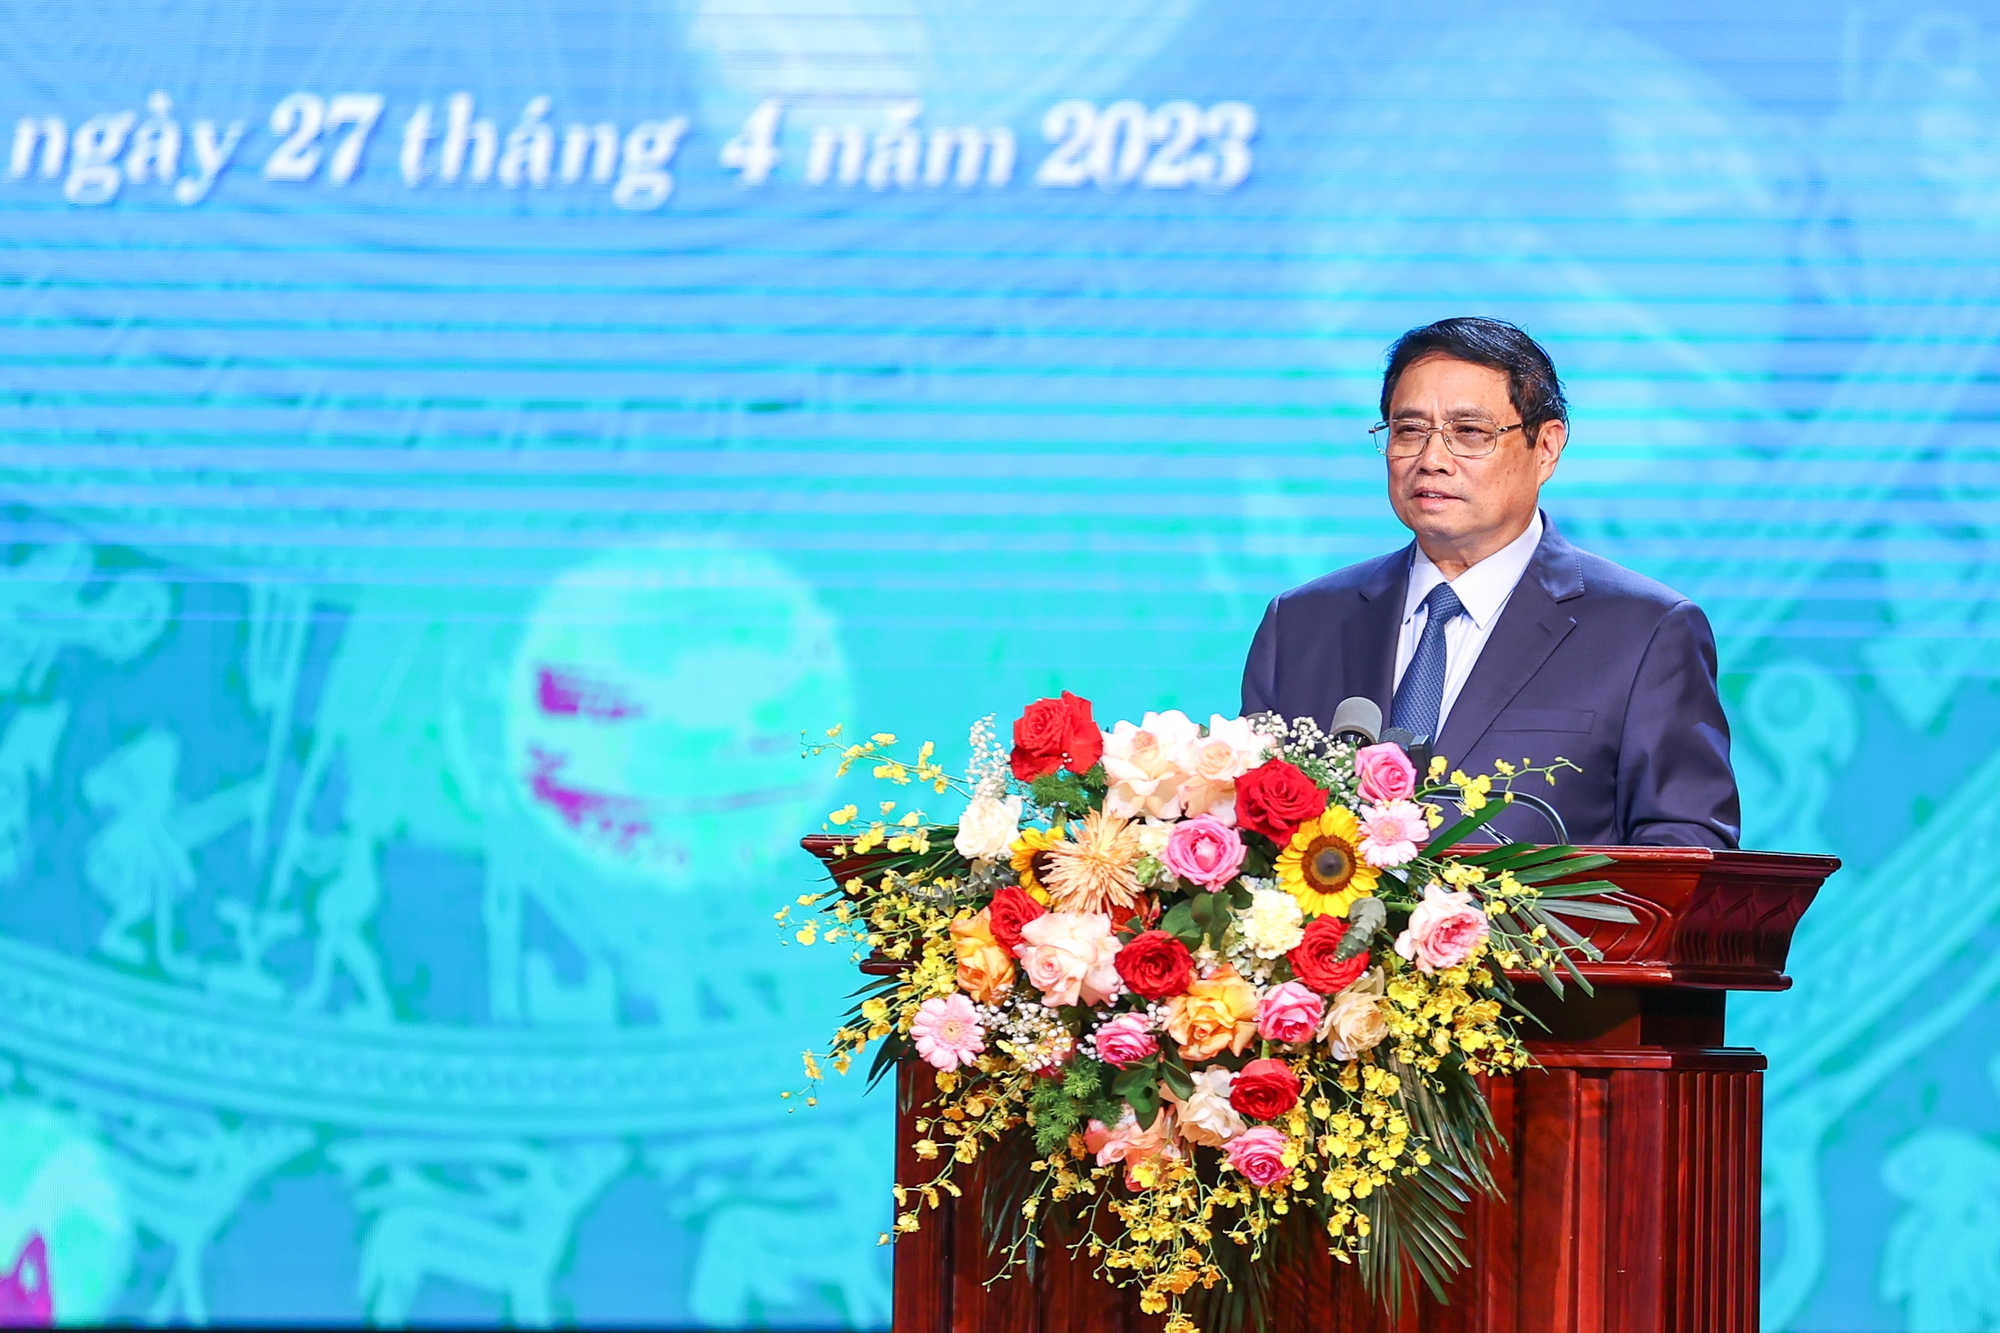 Thủ tướng Phạm Minh Chính: Phải nói tiếng nói chân thành của người lao động, hành động quyết liệt, hiệu quả trước những vấn đề người lao động cần* - Ảnh 1.